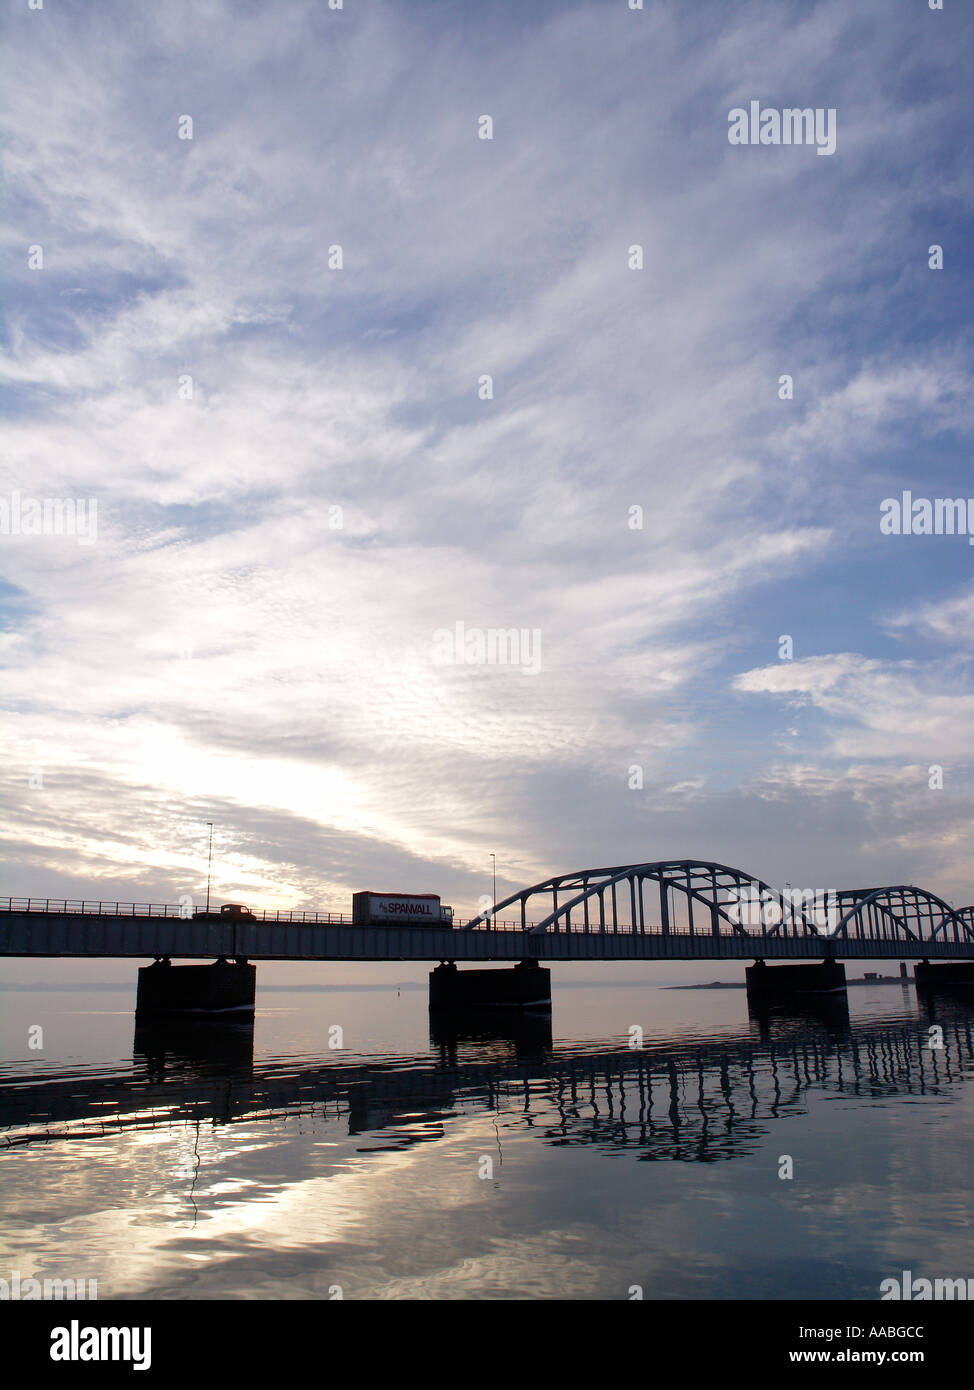 Dänemark-Jütland-Brücke Reflexion in das ruhige Wasser am Oddesund westlichen Jütland Dänemark Stockfoto